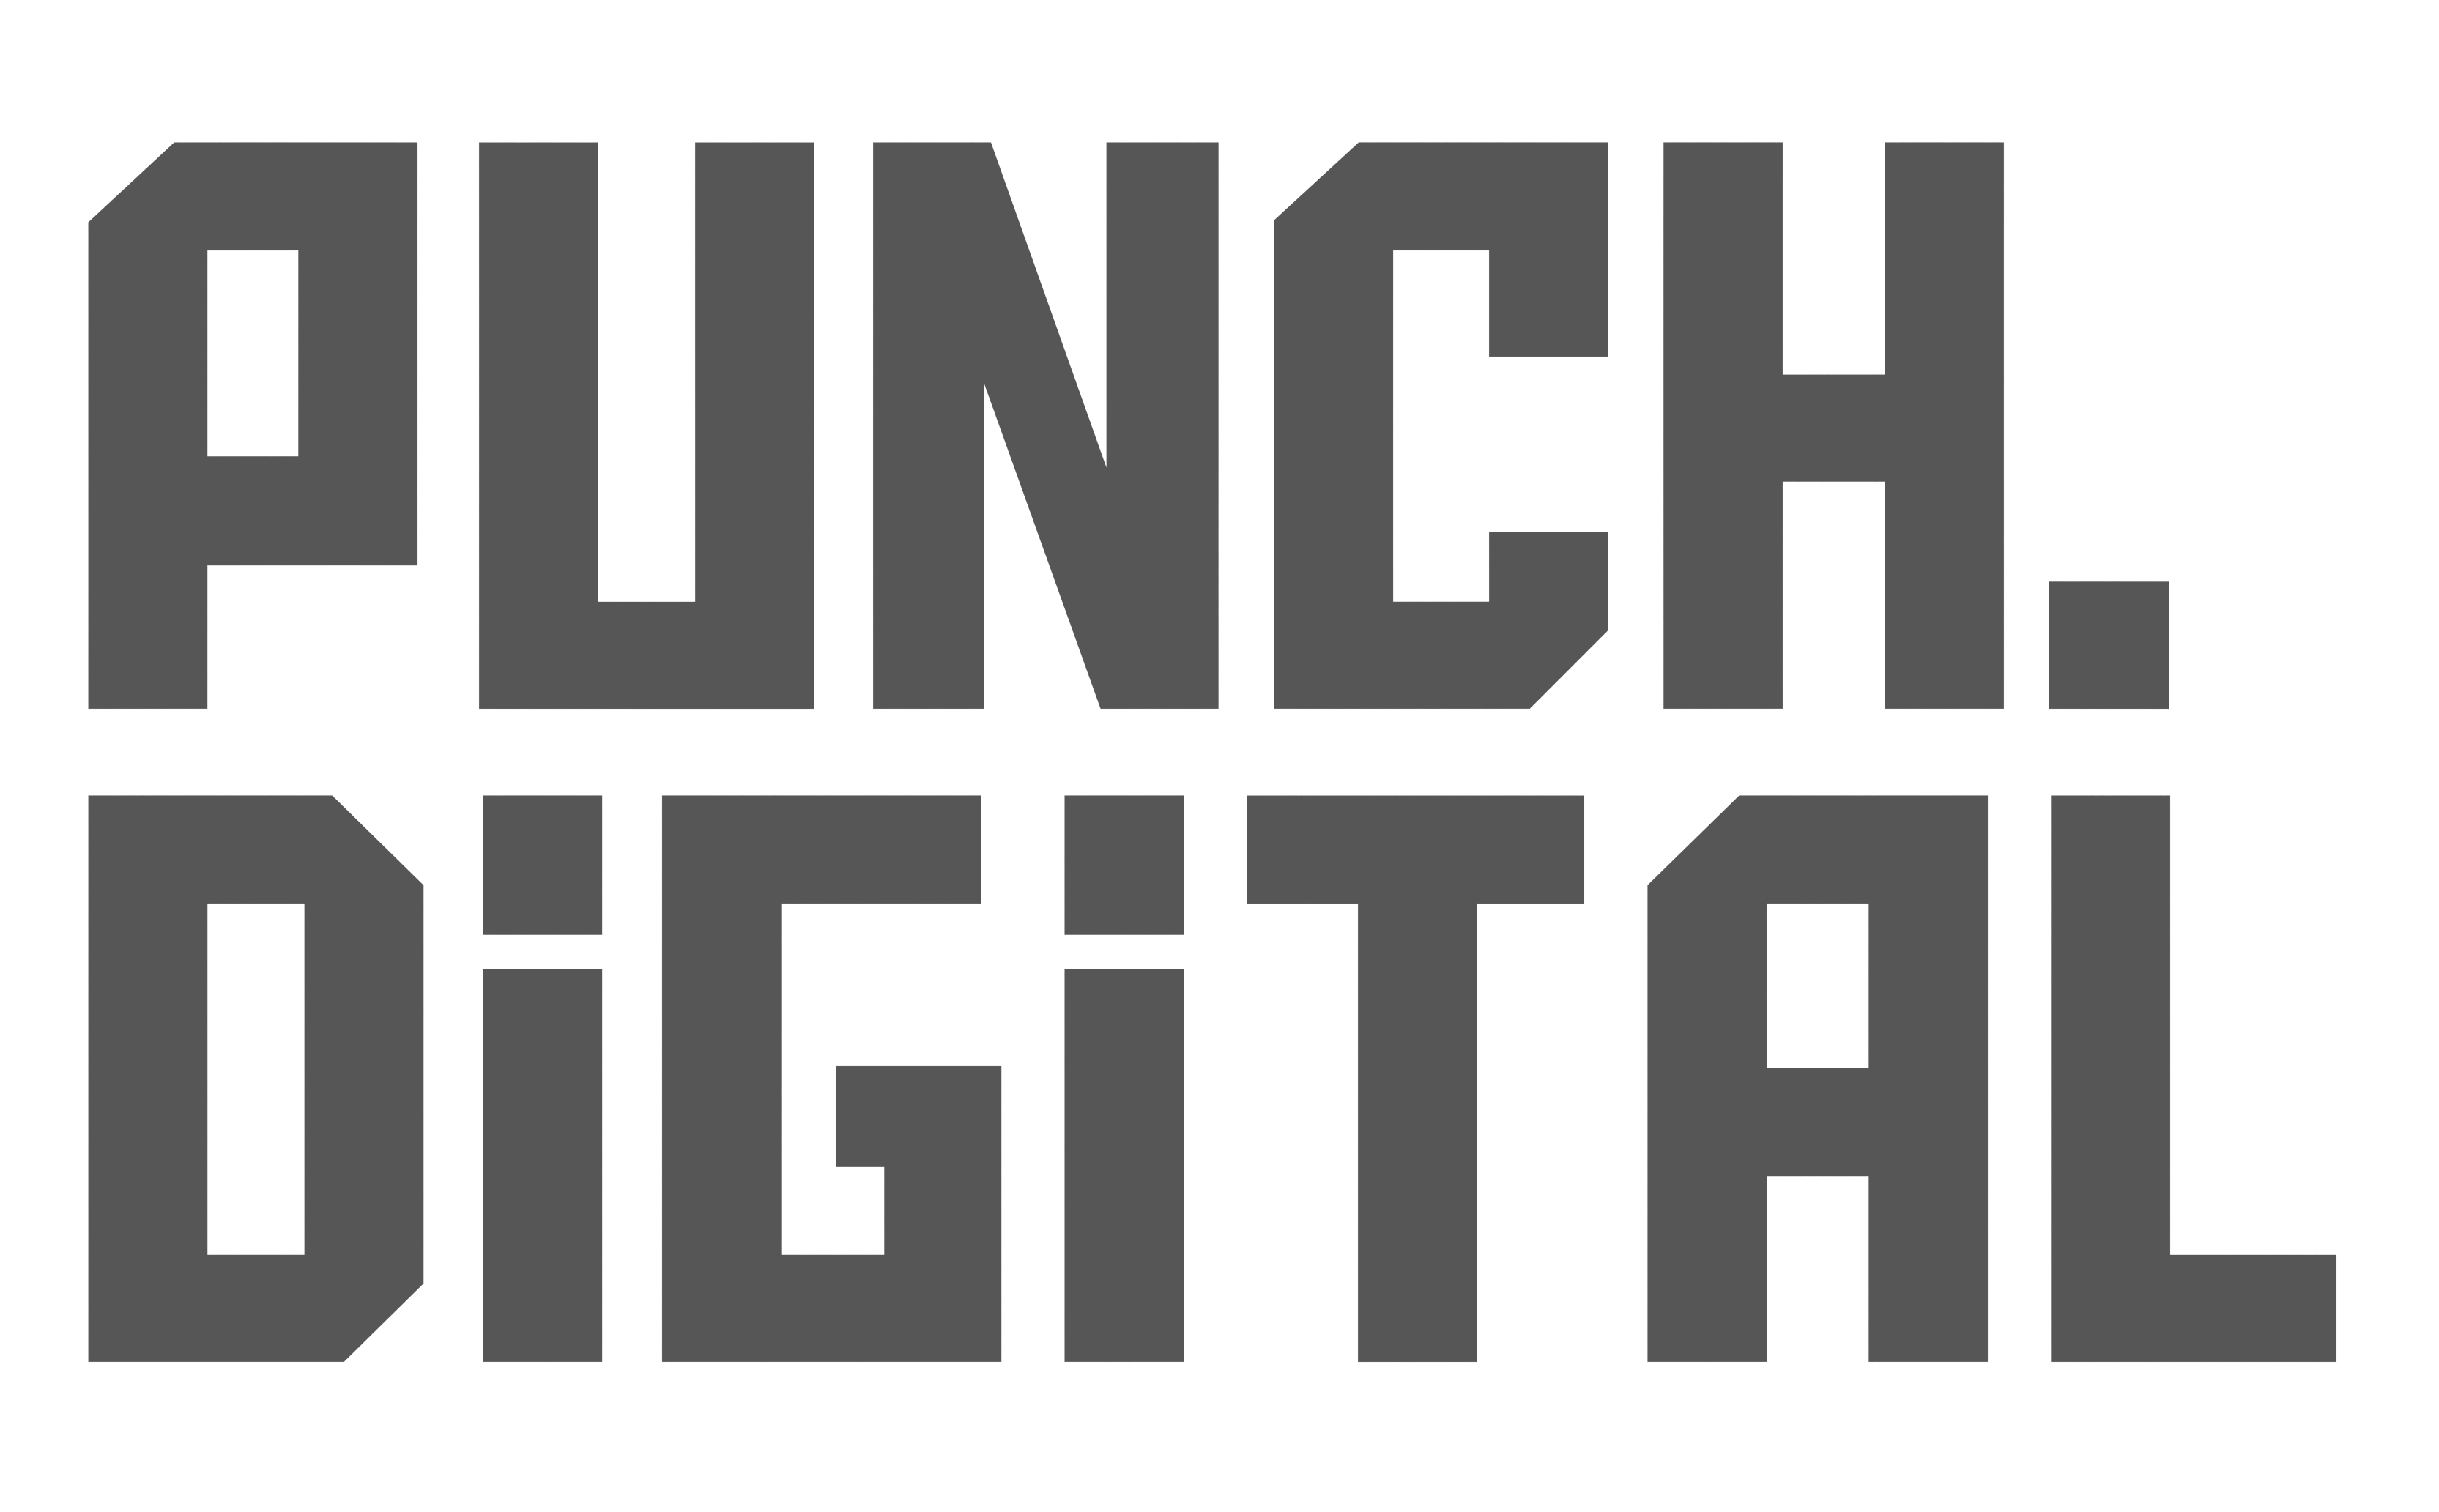 Punch Digital